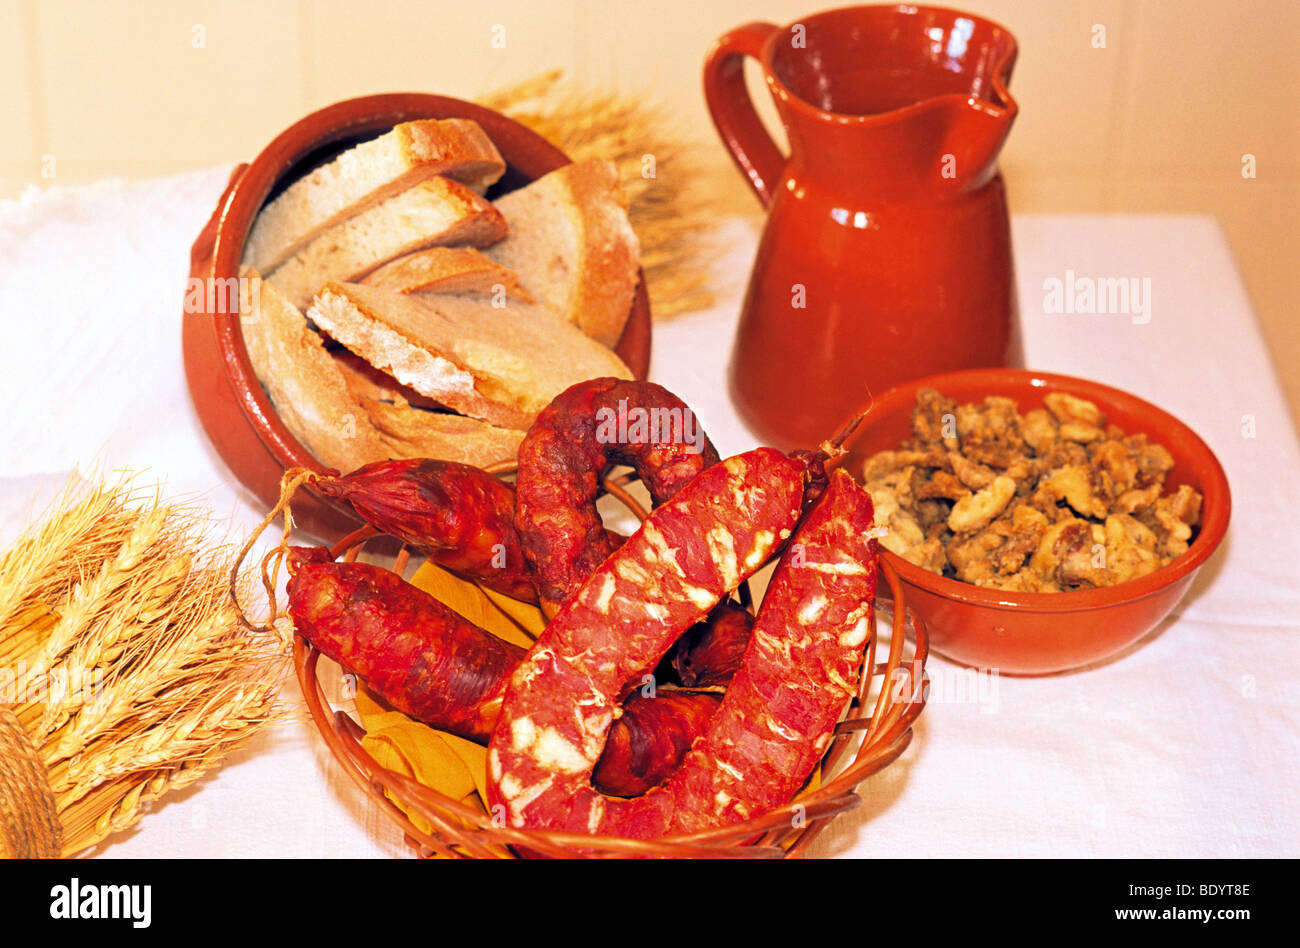 Portogallo Alentejo: ingredienti tradizionali delle zone rurali Alentejo gastronomia Foto Stock